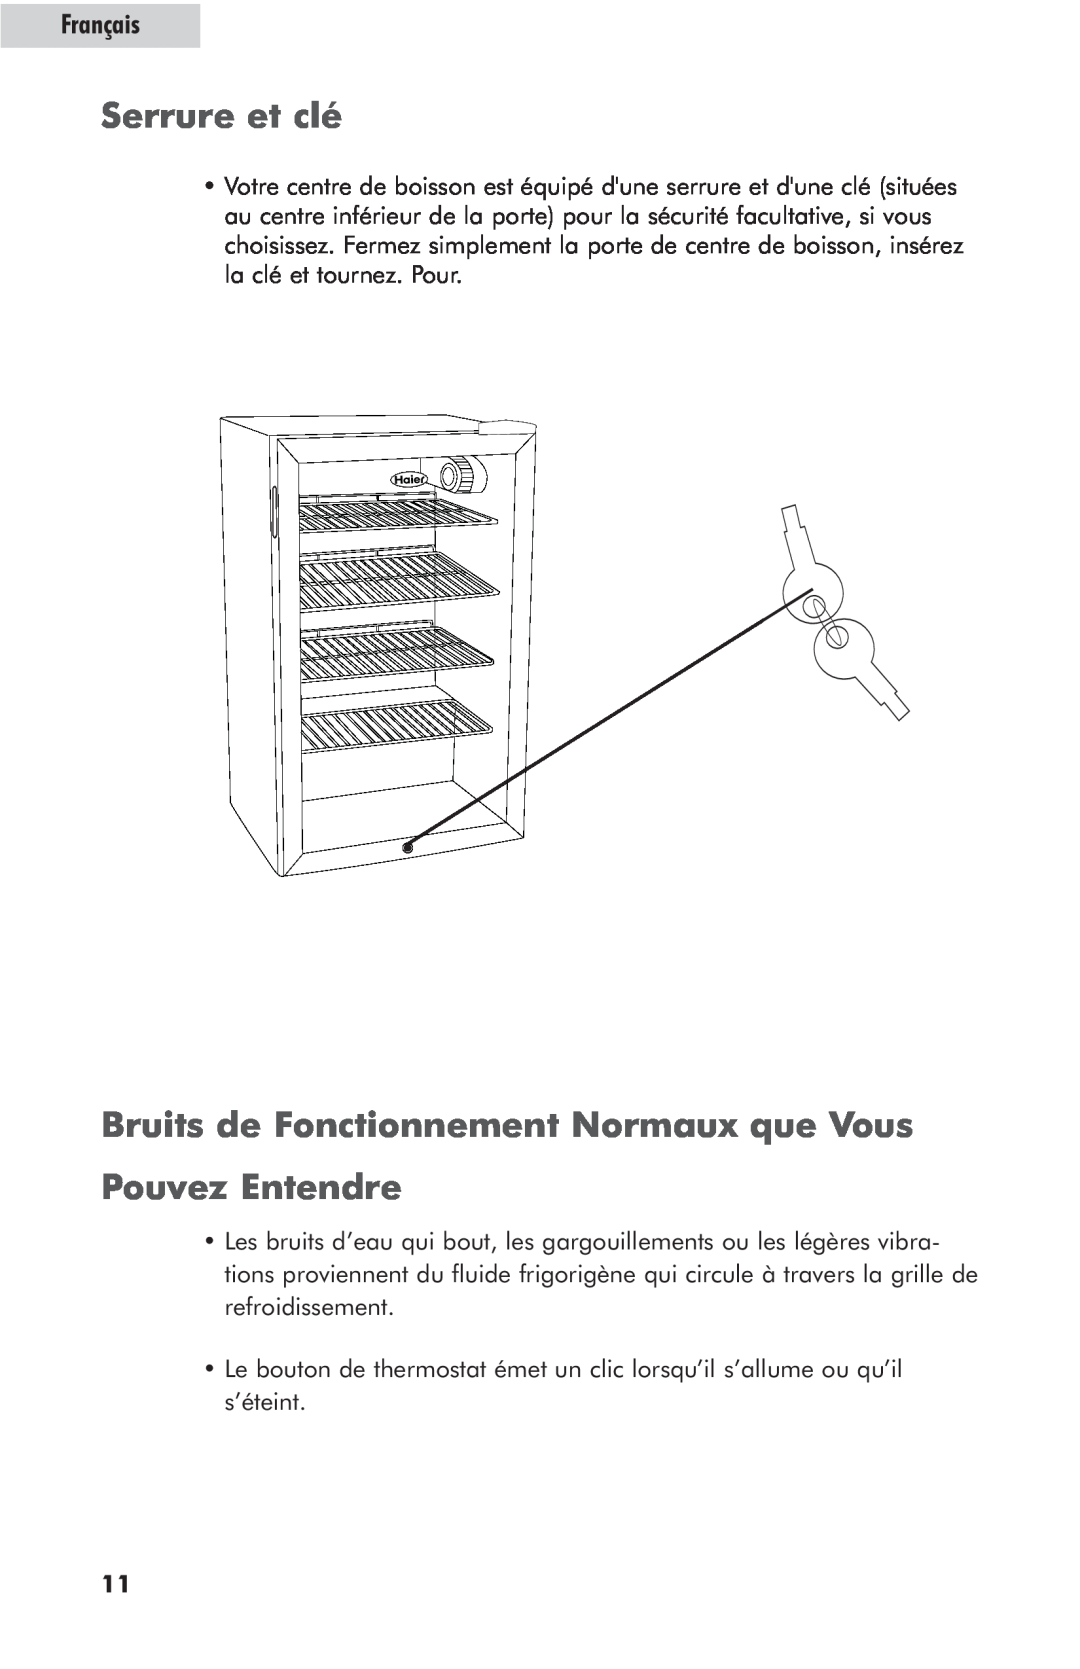 Haier hc125fvs user manual Serrure et clé, Bruits de Fonctionnement Normaux que Vous, Pouvez Entendre, Français 